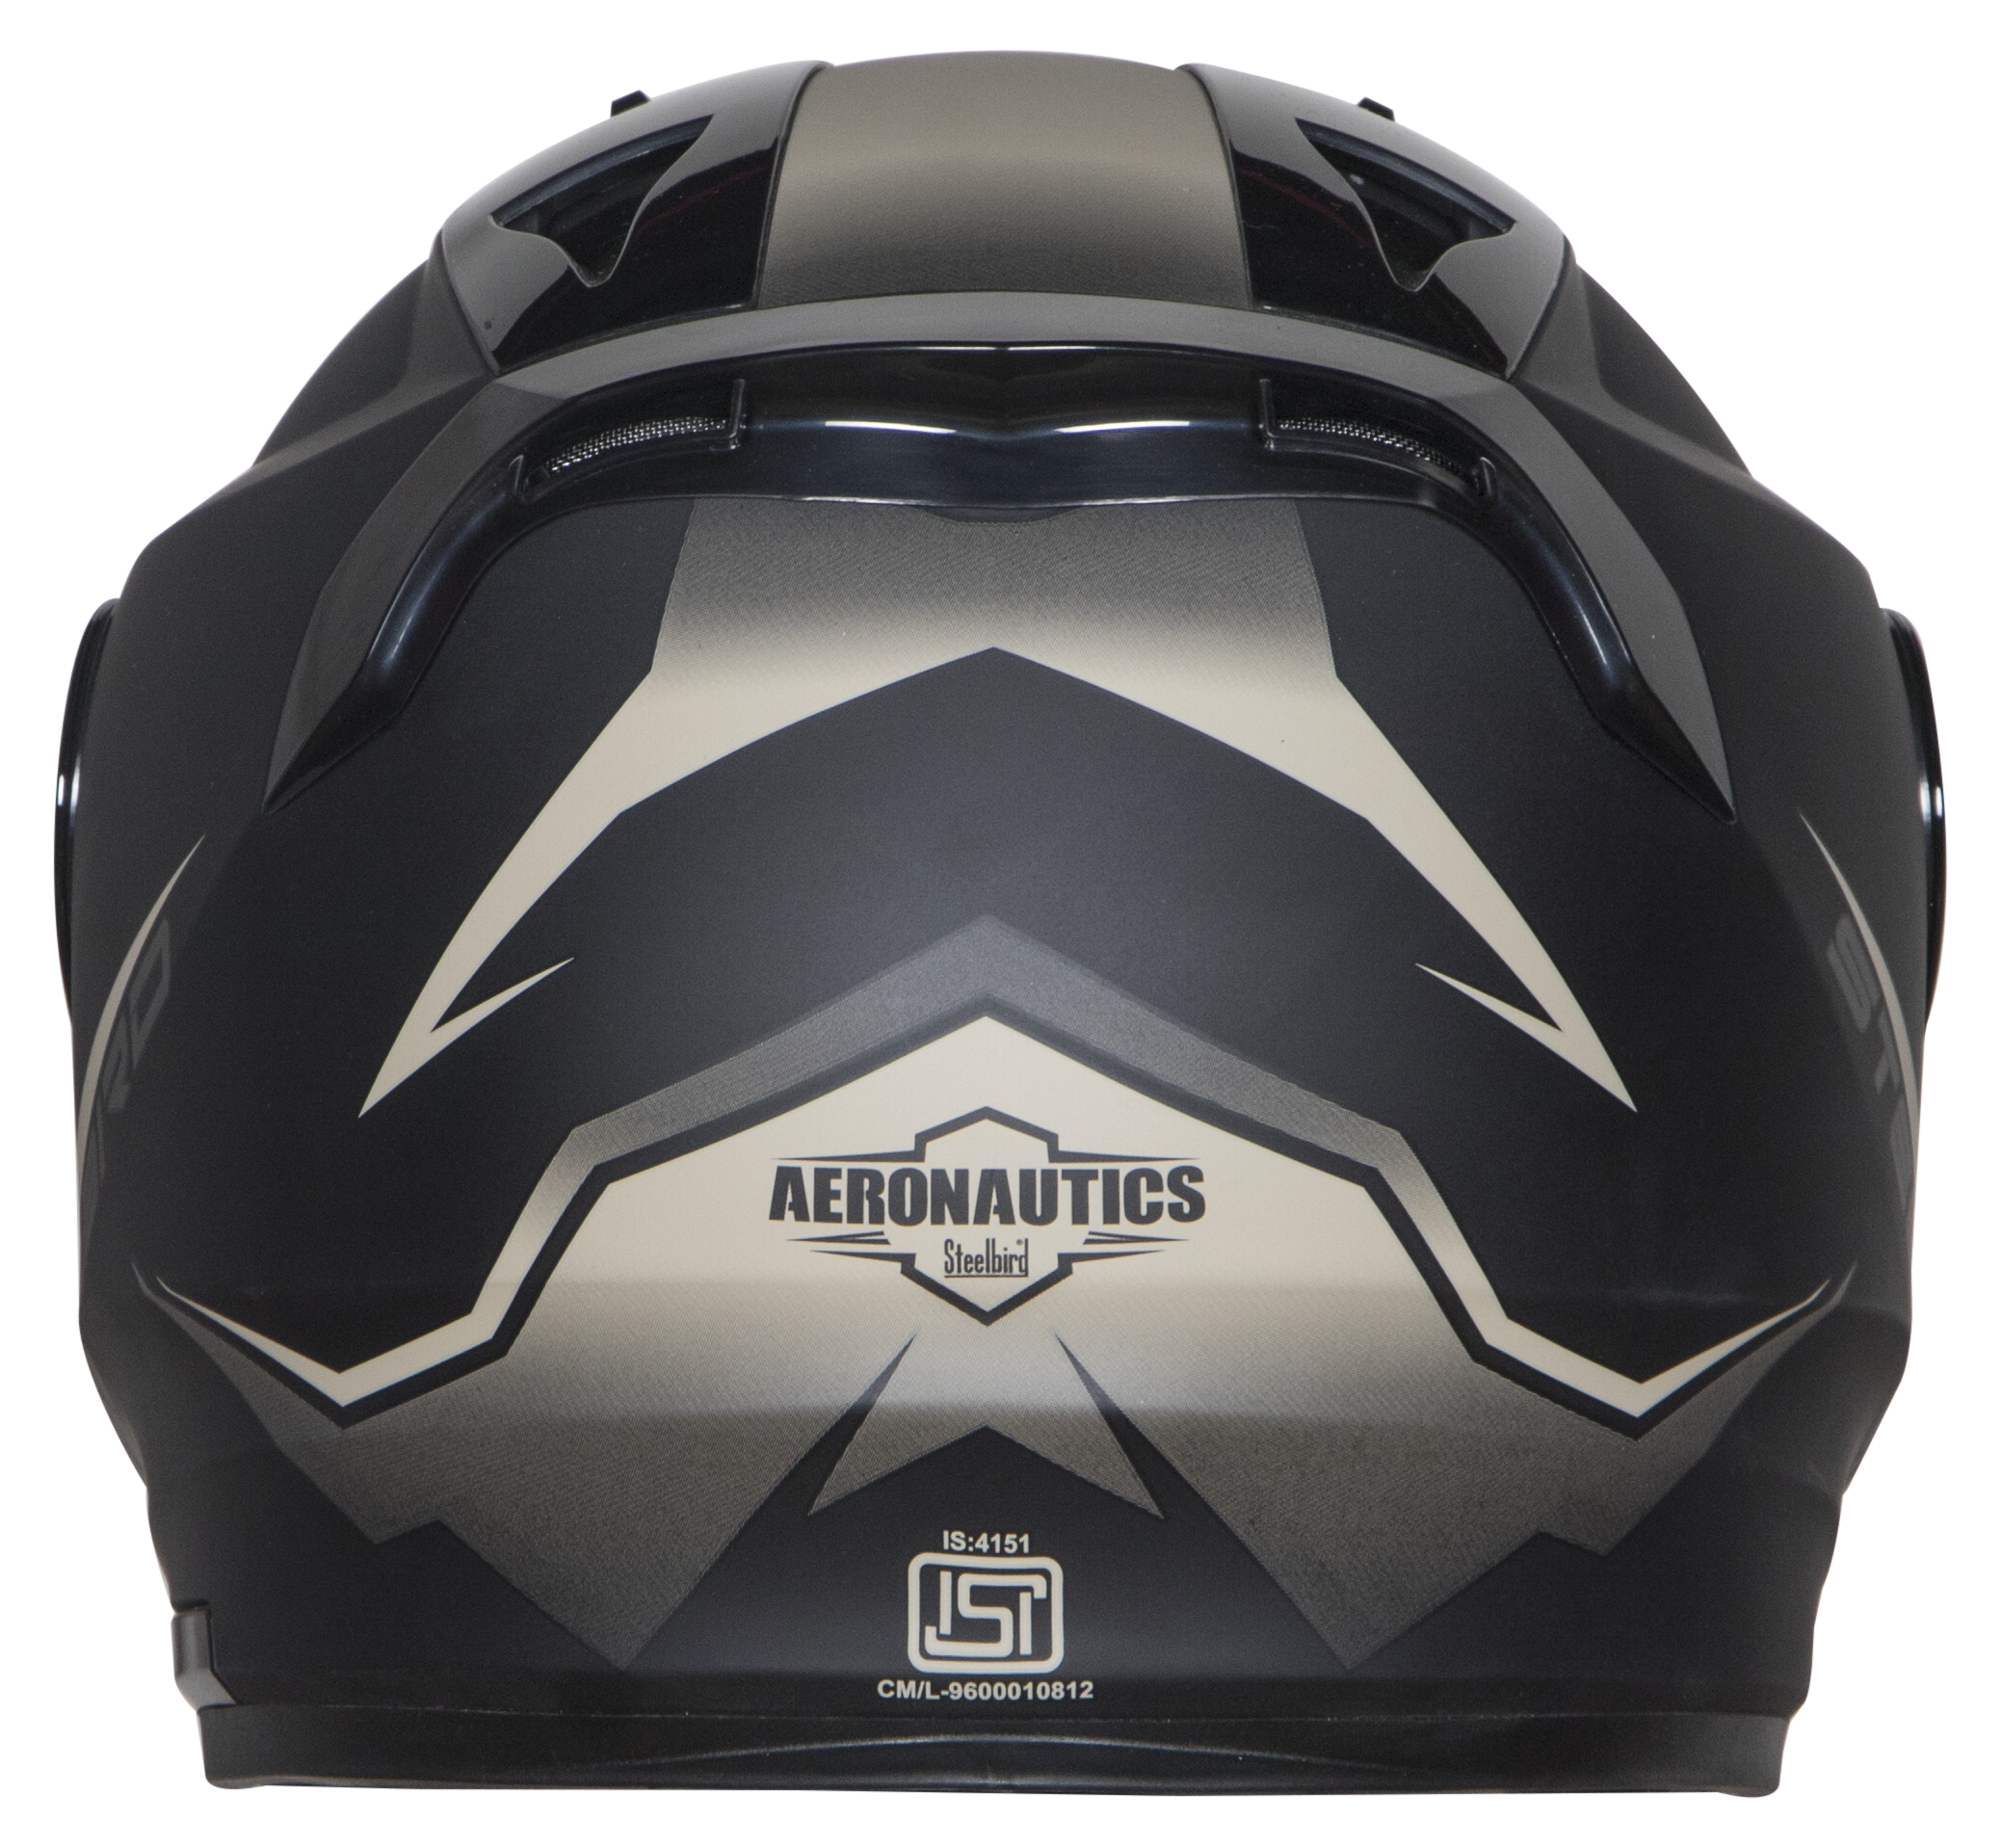 Steelbird SA-1 Whif ISI Certified Full Face Helmet (Matt Black Desert Storm With Chrome Gold Visor)